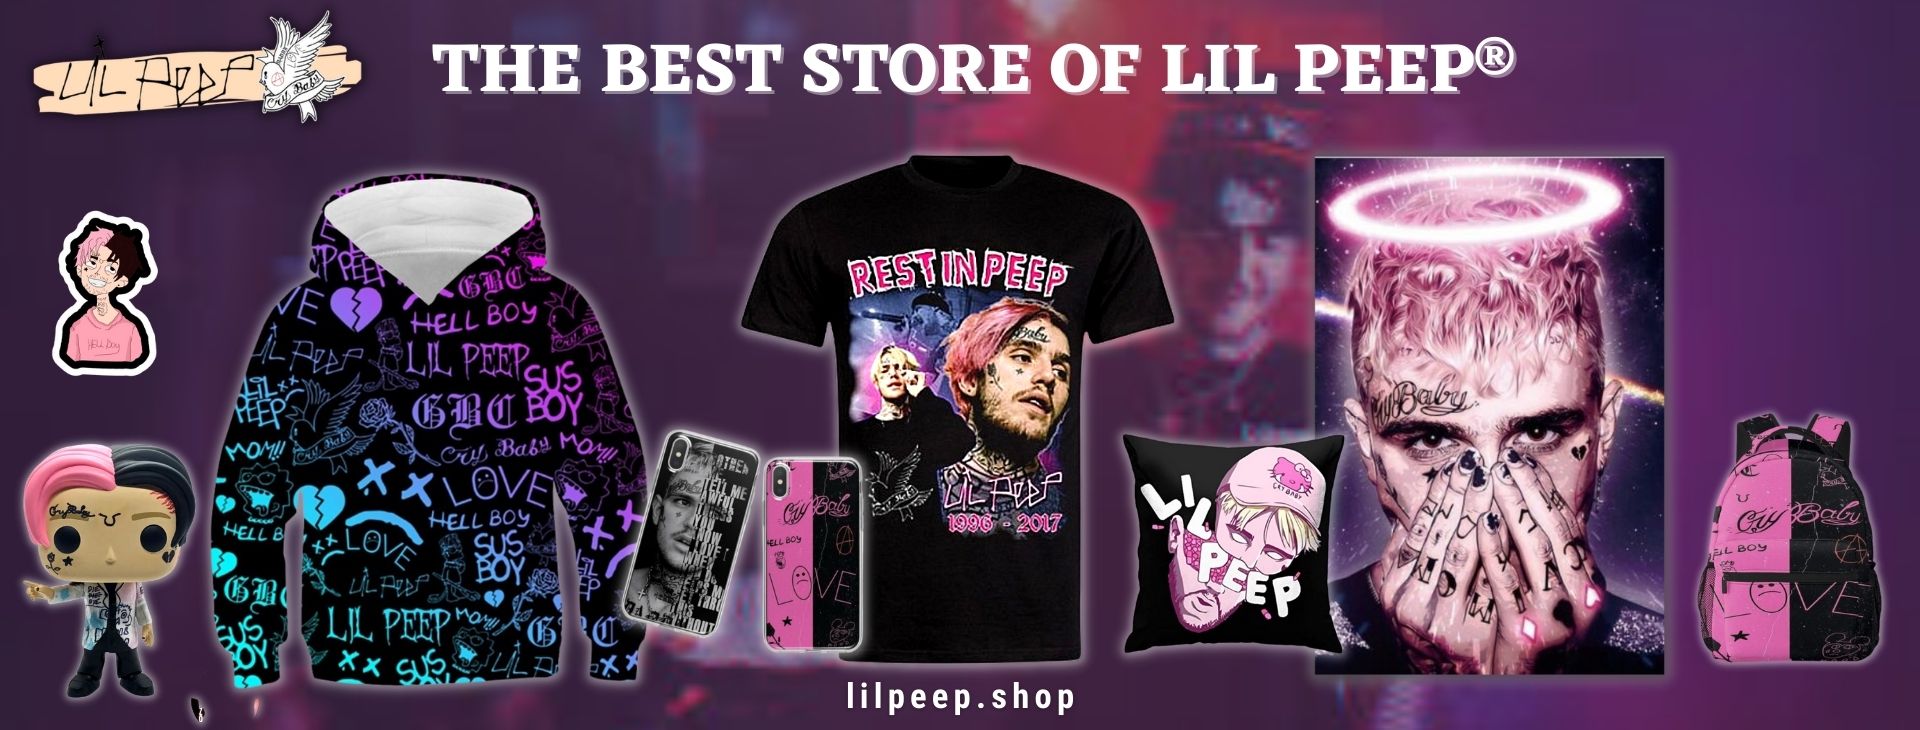 Lil Peep shop Banner 1920x730px 1 - Lil Peep Shop